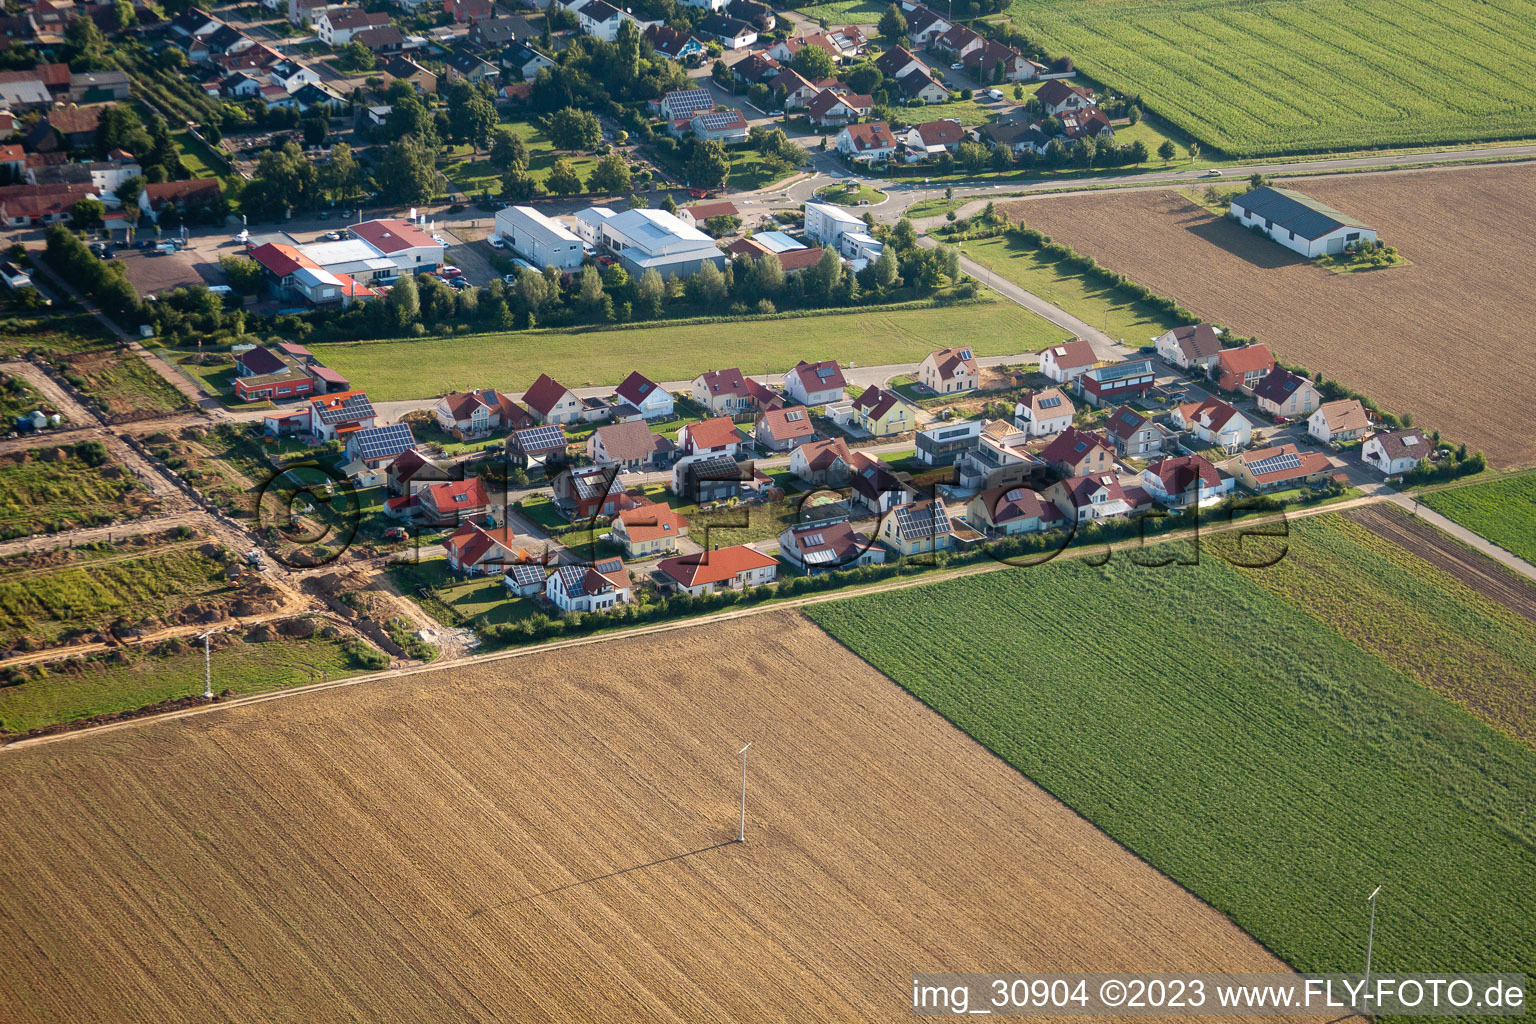 Vue d'oiseau de Nouvelle zone de développement Brotäcker à Steinweiler dans le département Rhénanie-Palatinat, Allemagne